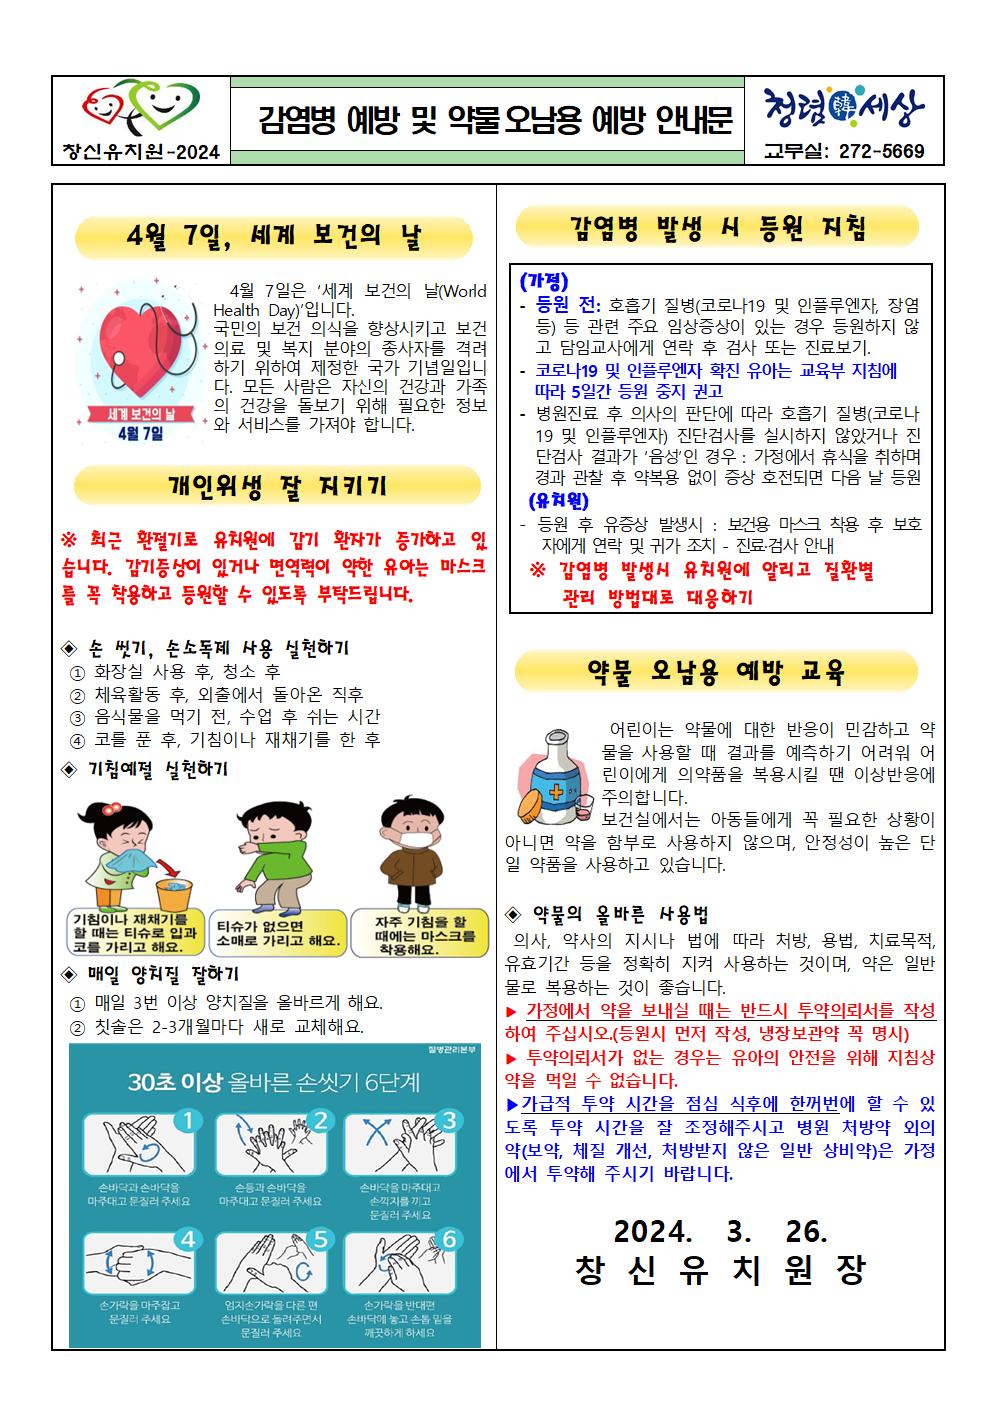 감염병 예방 및 약물오남용 예방 안내문001